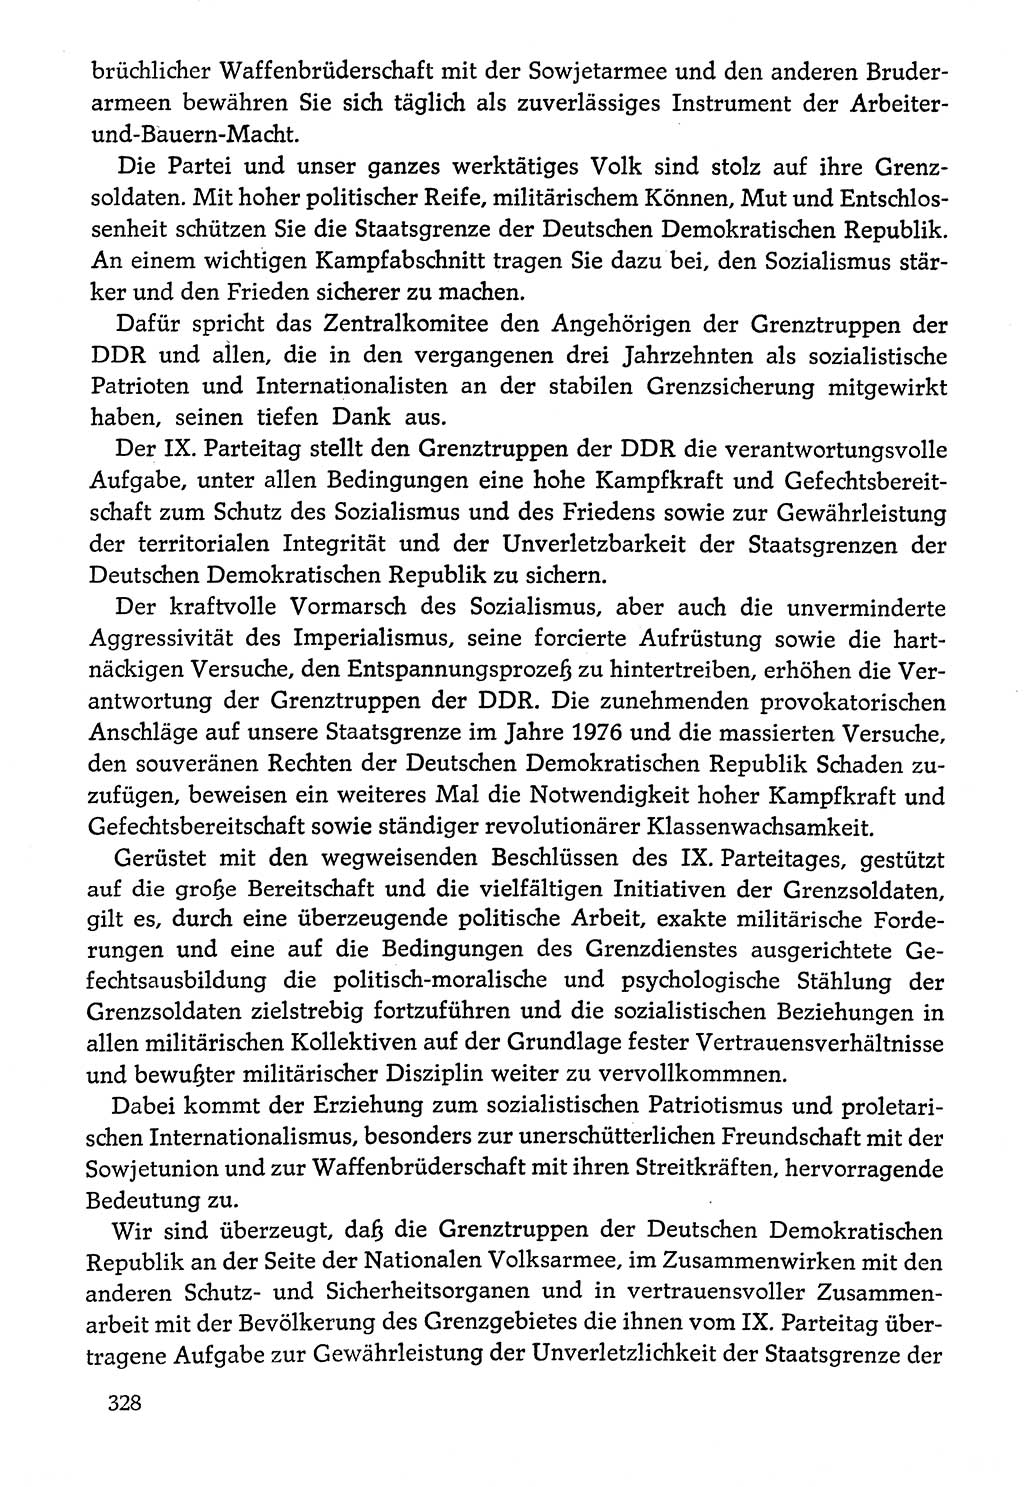 Dokumente der Sozialistischen Einheitspartei Deutschlands (SED) [Deutsche Demokratische Republik (DDR)] 1976-1977, Seite 328 (Dok. SED DDR 1976-1977, S. 328)